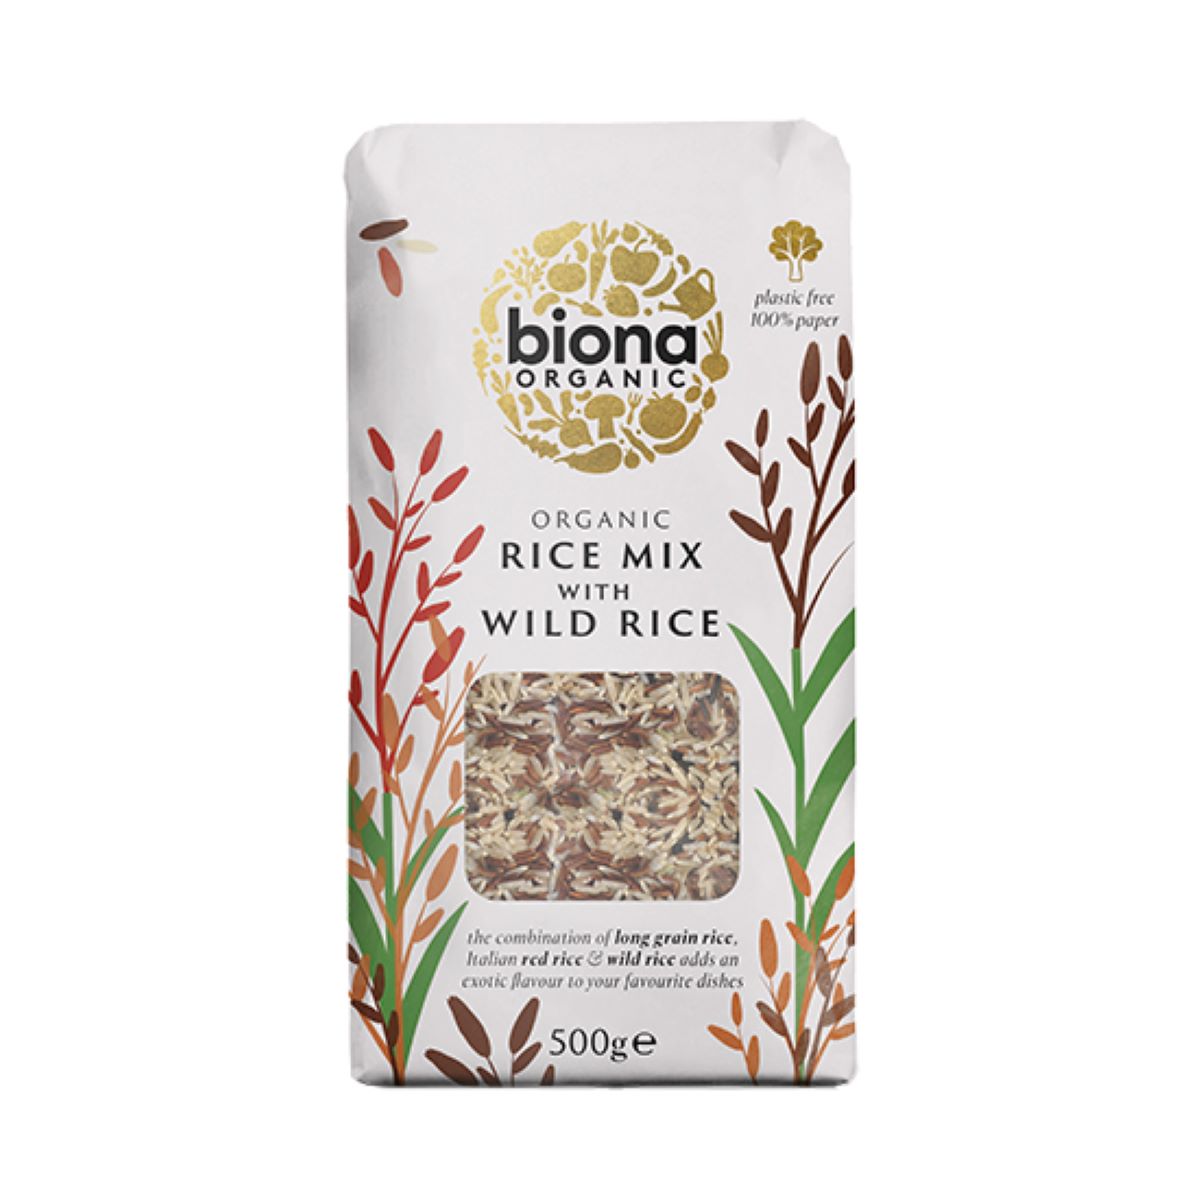 Biona Organic Rice Mix With Wild Rice 500g